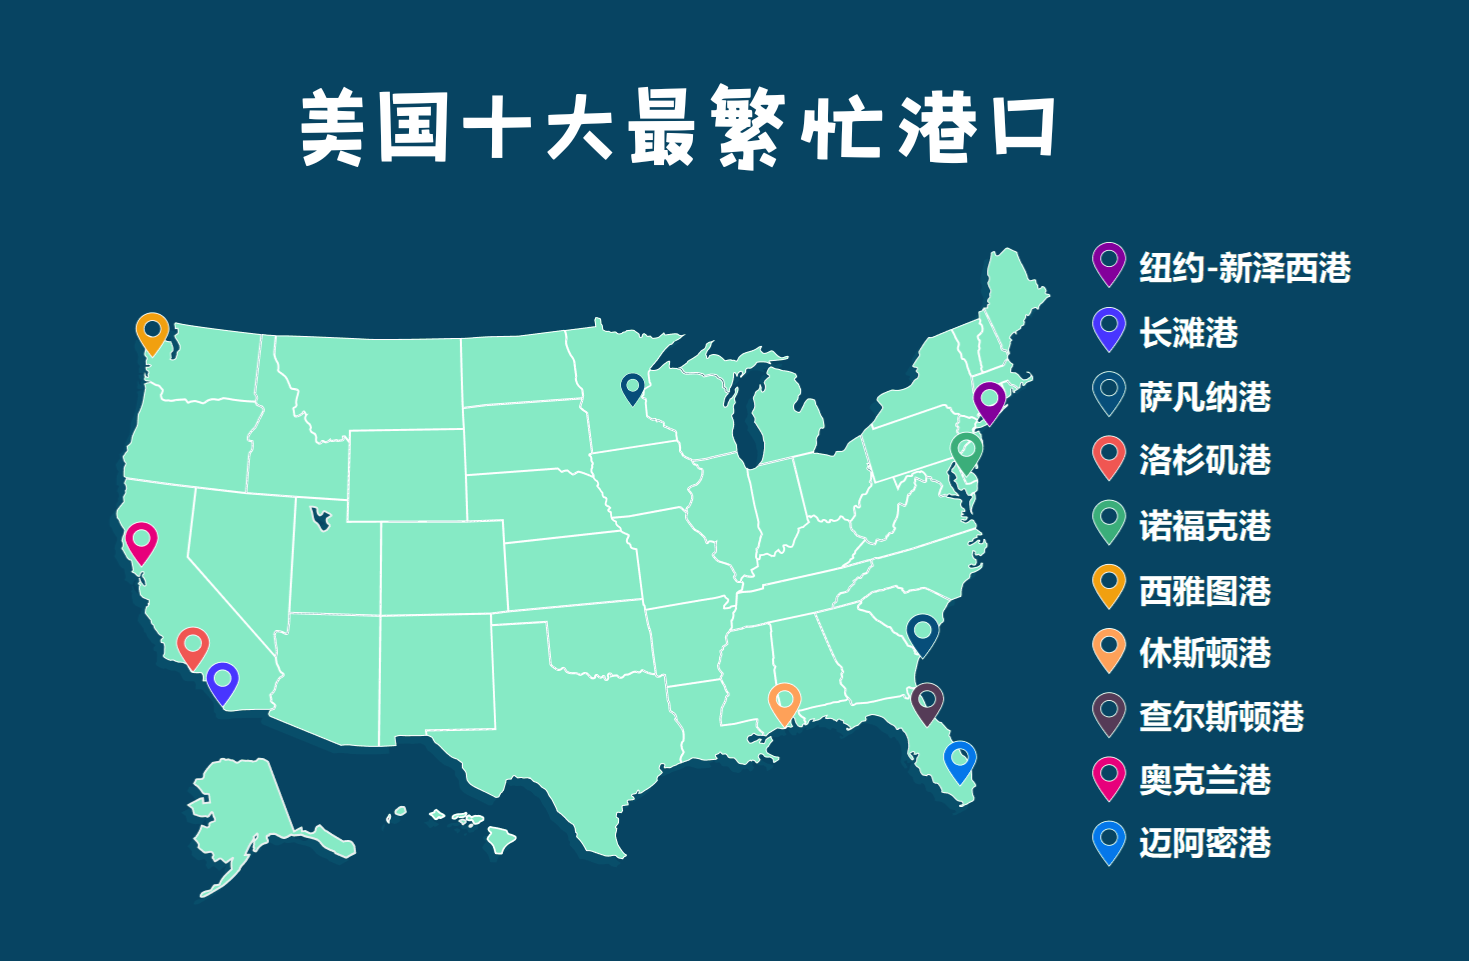 Illustrez les routes maritimes sino-américaines, comment expédier les marchandises aux États-Unis le plus rapidement possible?